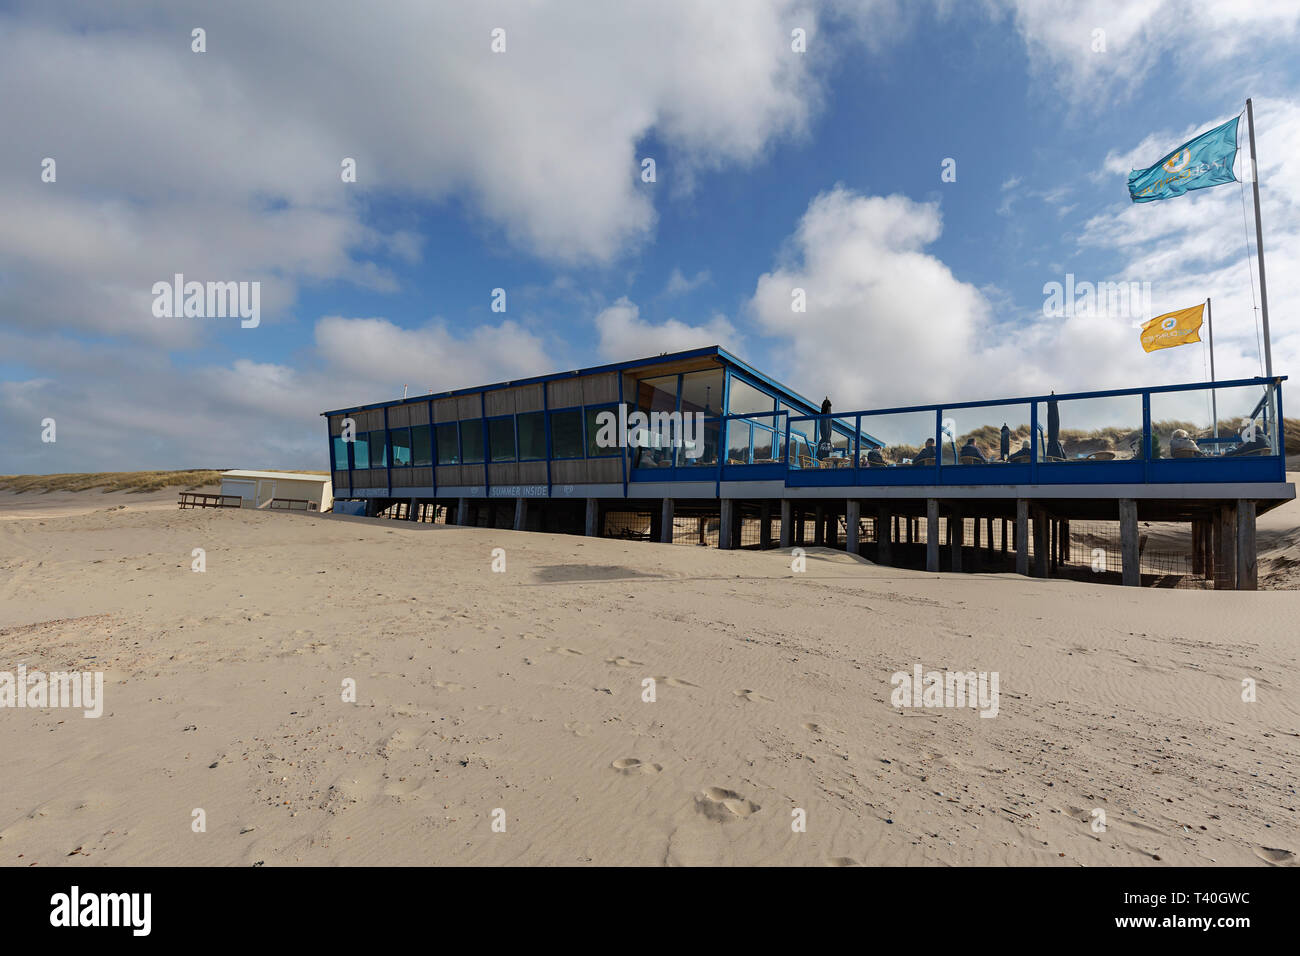 Domburg - Blick auf Strand Pavillon Lage Duintjes in Oostkapelle, Zeeland,  Niederlande, Domburg, 20.03.2019 Stockfotografie - Alamy